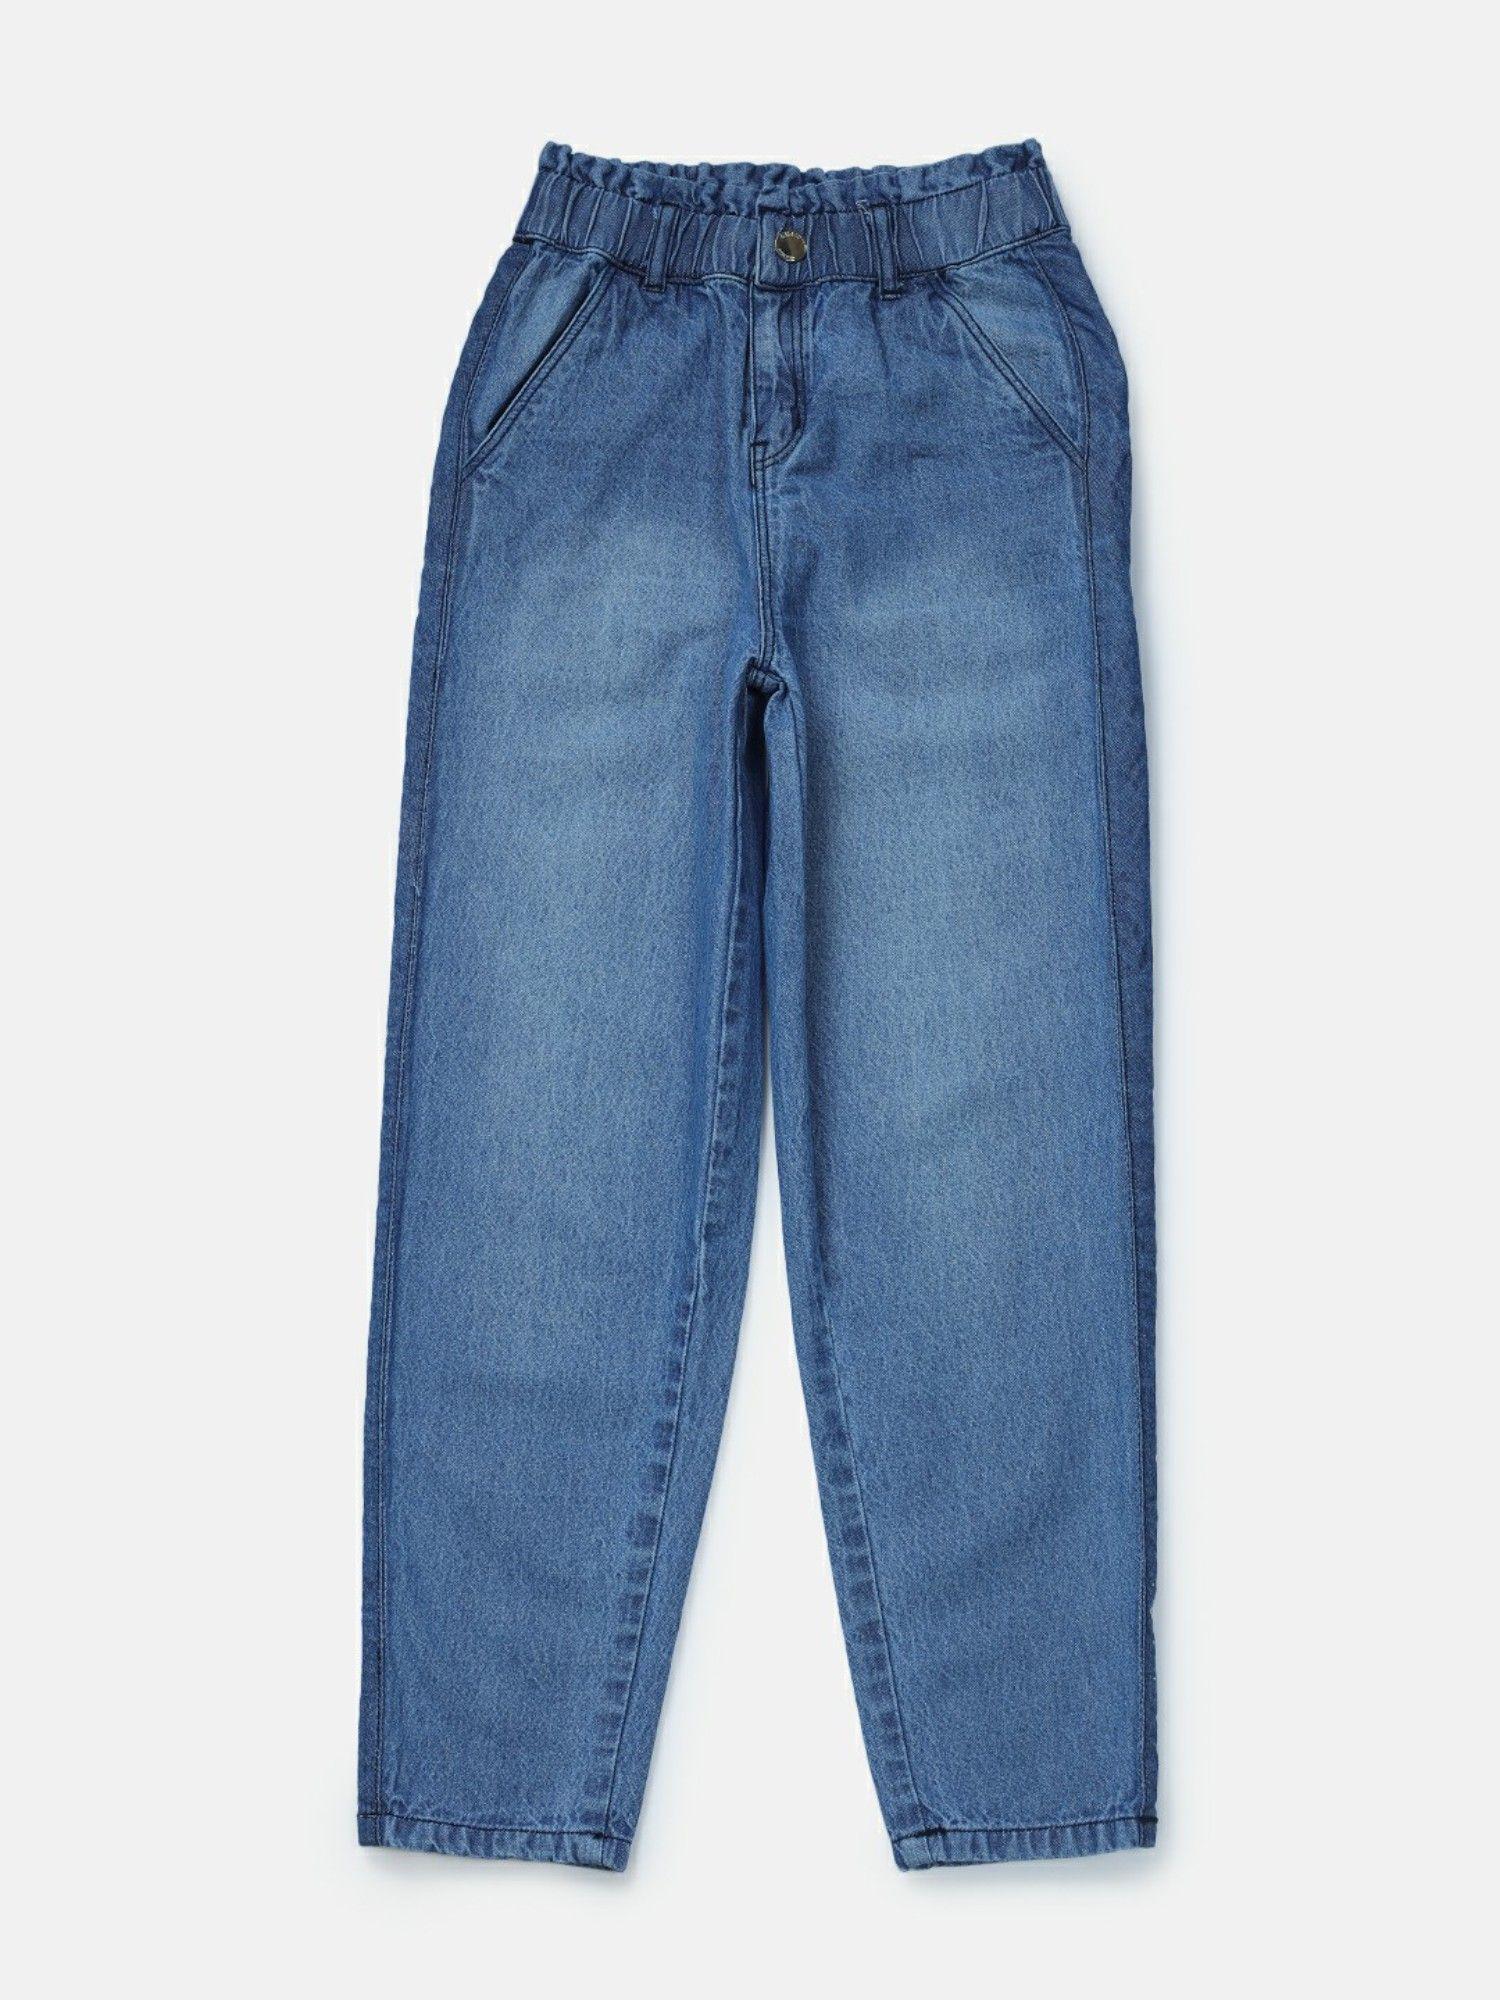 girls blue denim solid jeans